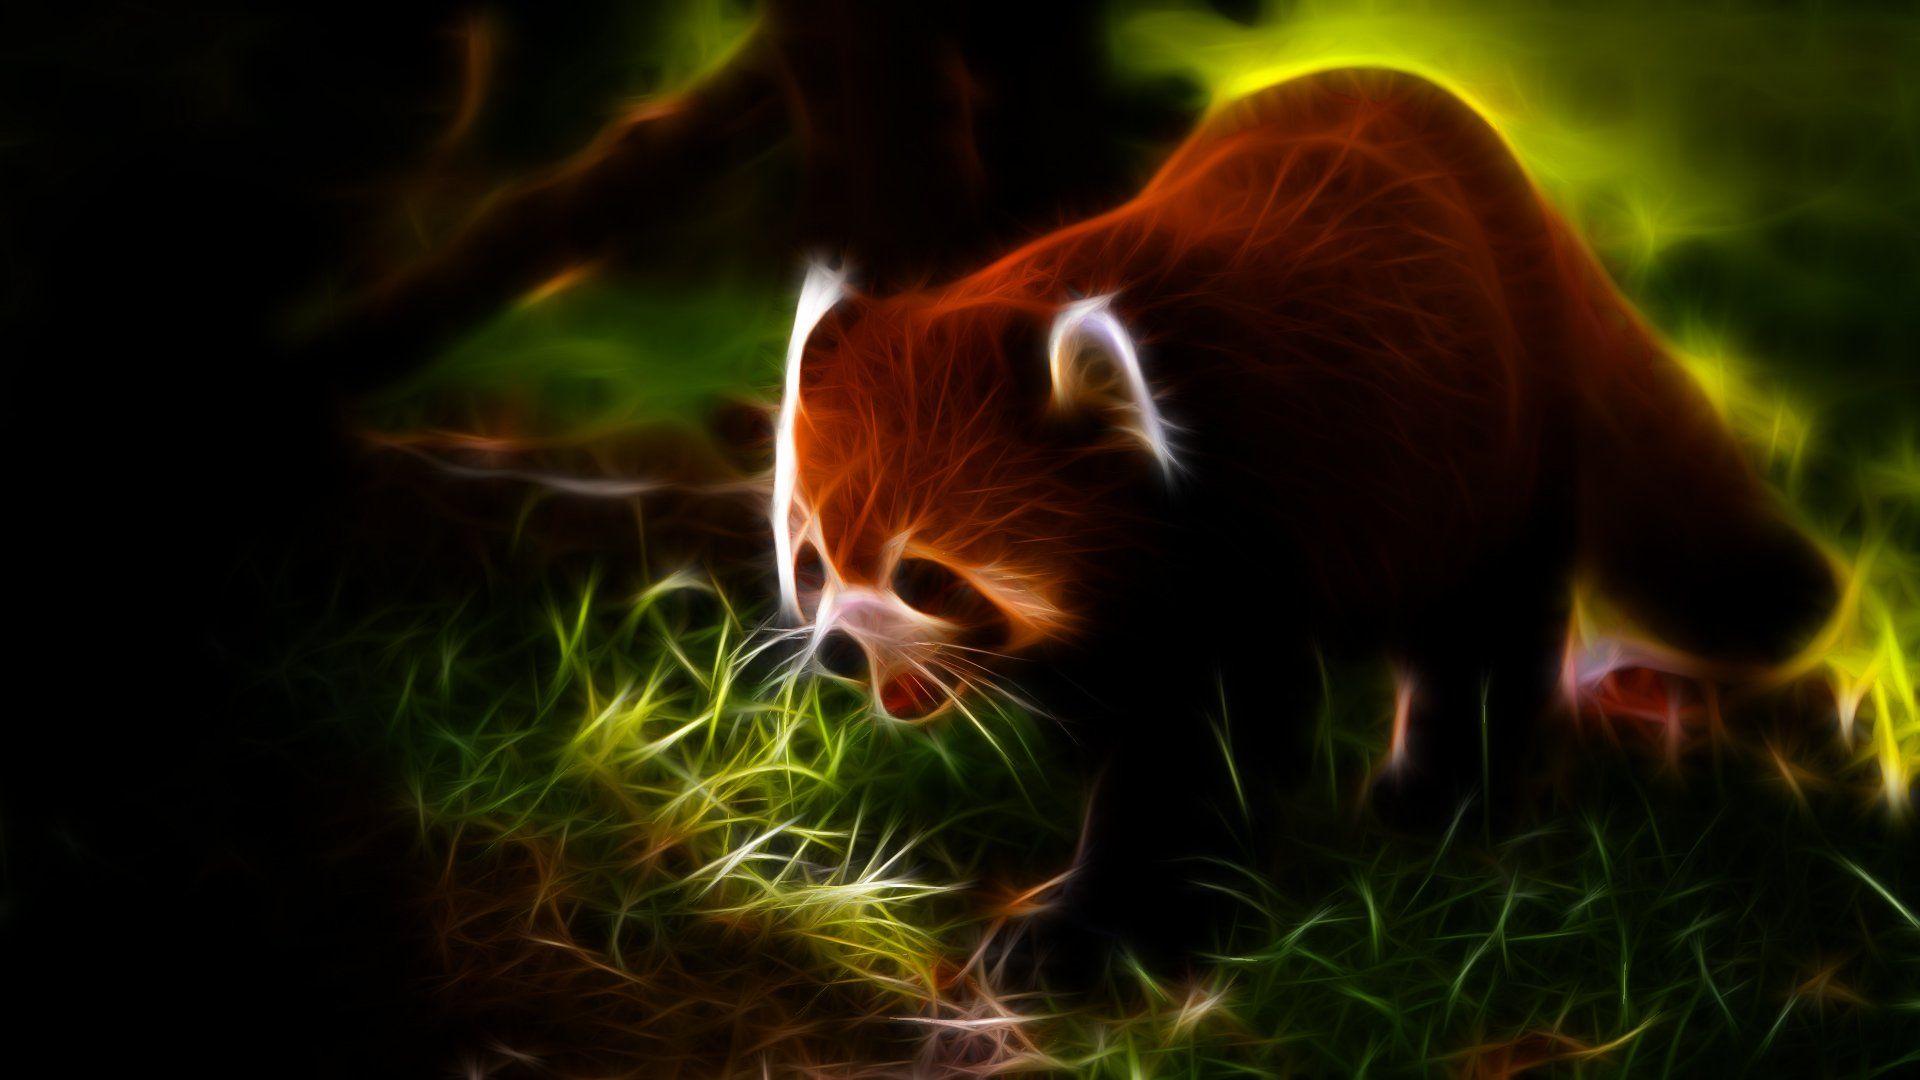 Animals Fractalius red pandas wallpaperx1080